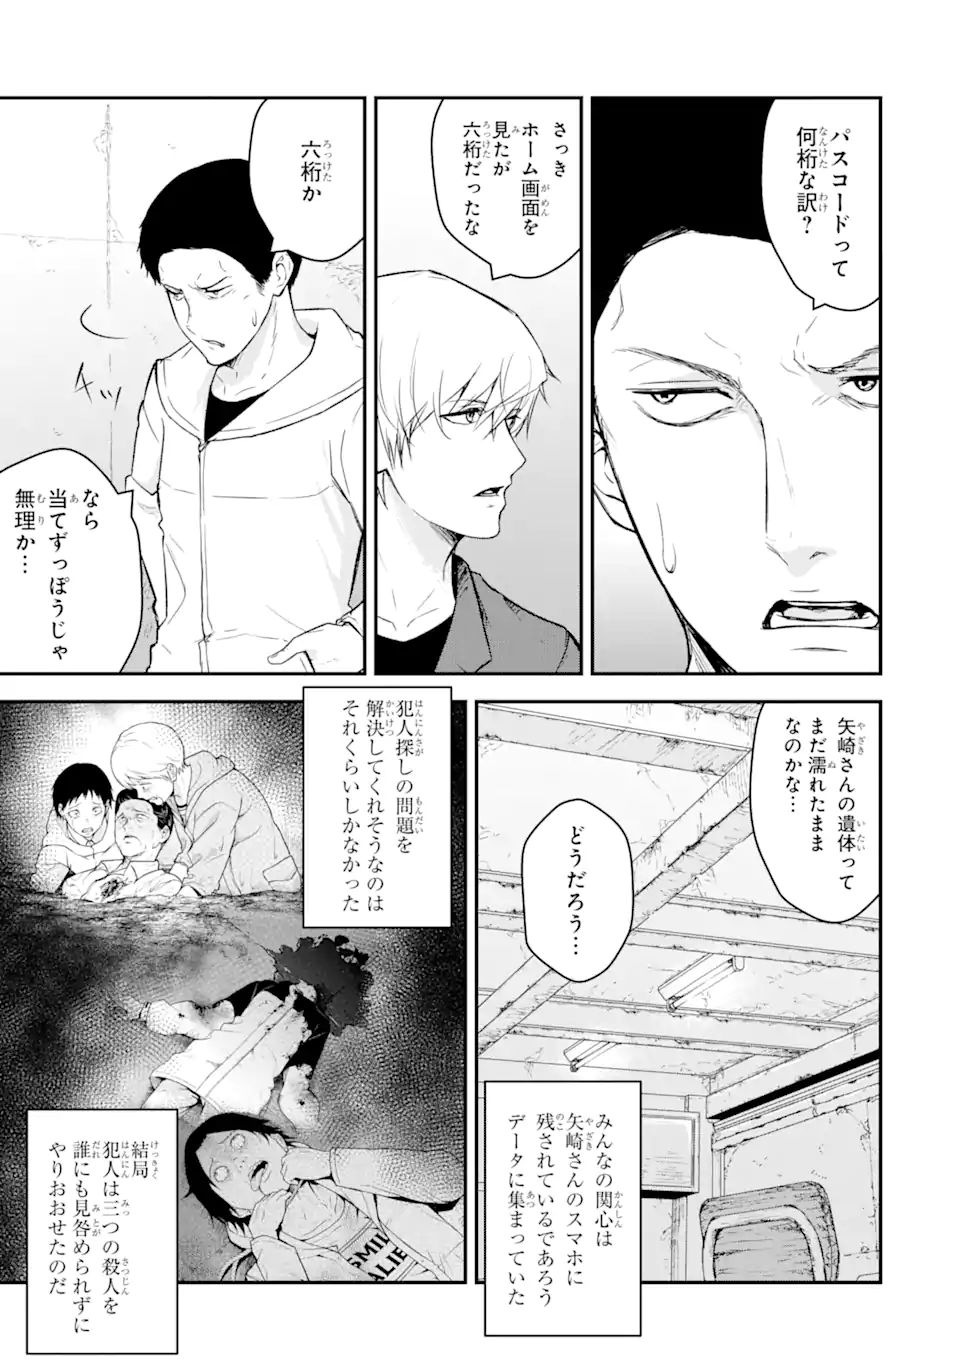 Hakobune – Shinubeki na no wa Dare ka? - Chapter 11.2 - Page 5